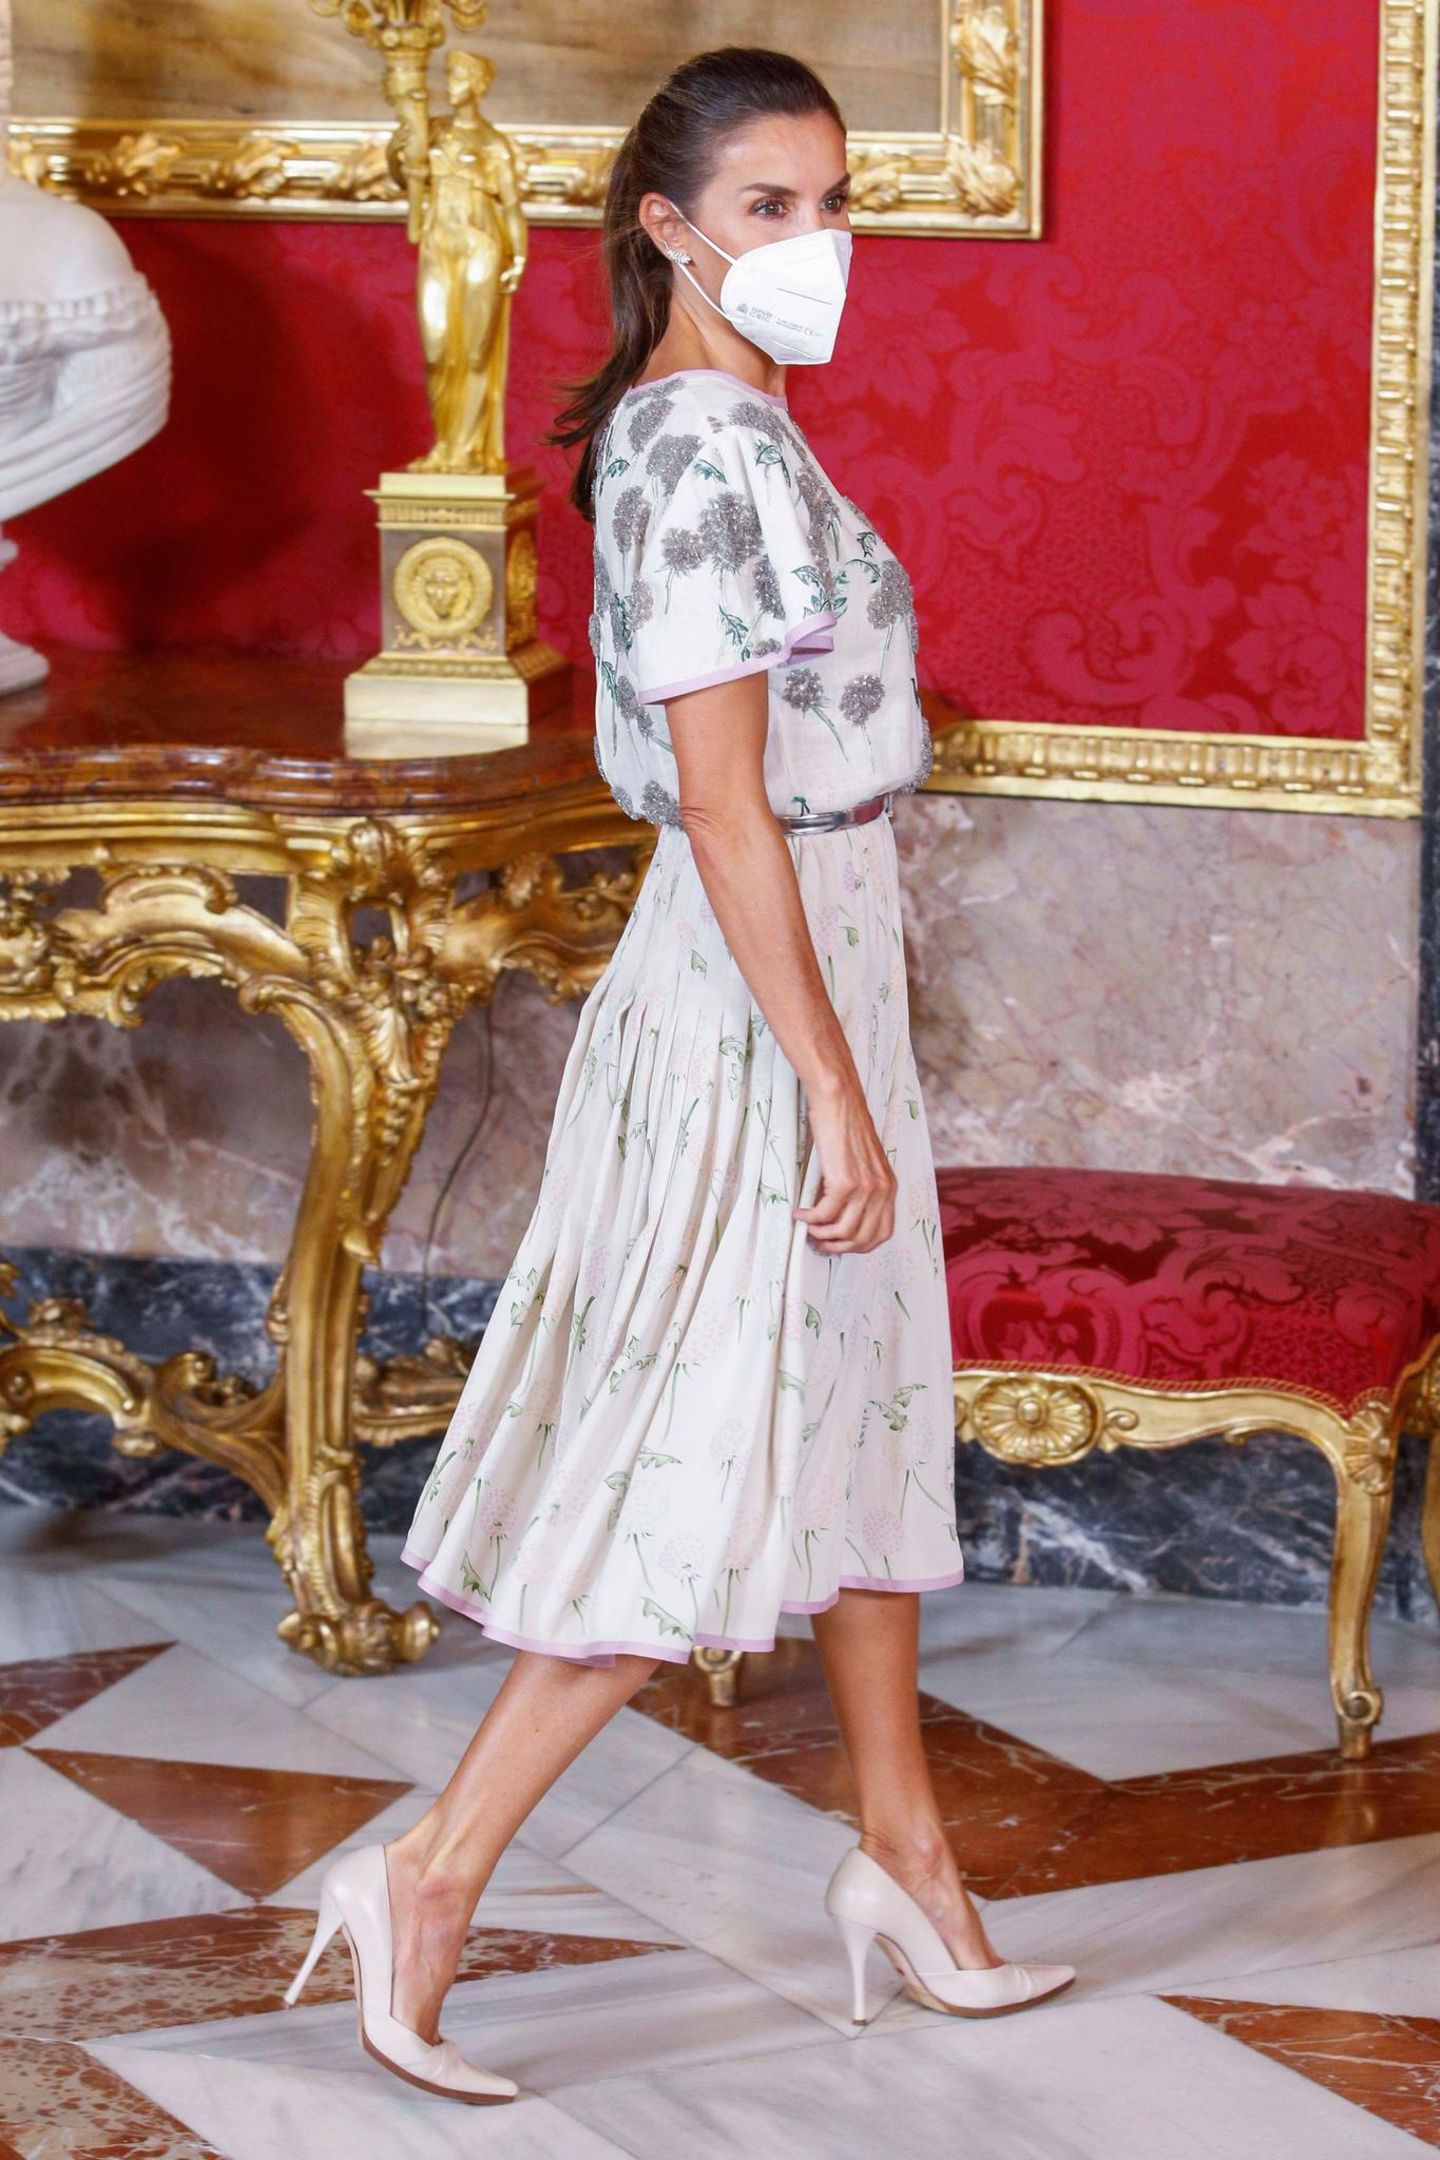 Wer hätte gedacht, dass Königin Letizia den gleichen Modegeschmack wie ihre Schwiegermutter Königin Sofía hat? Beim Essen zu Ehren des chilenischen Präsidenten greift die Frau von König Felipe auf dasselbe strassbesetzte Kleid zurück, das Königin Sofía 1981 in Rom getragen hat. 